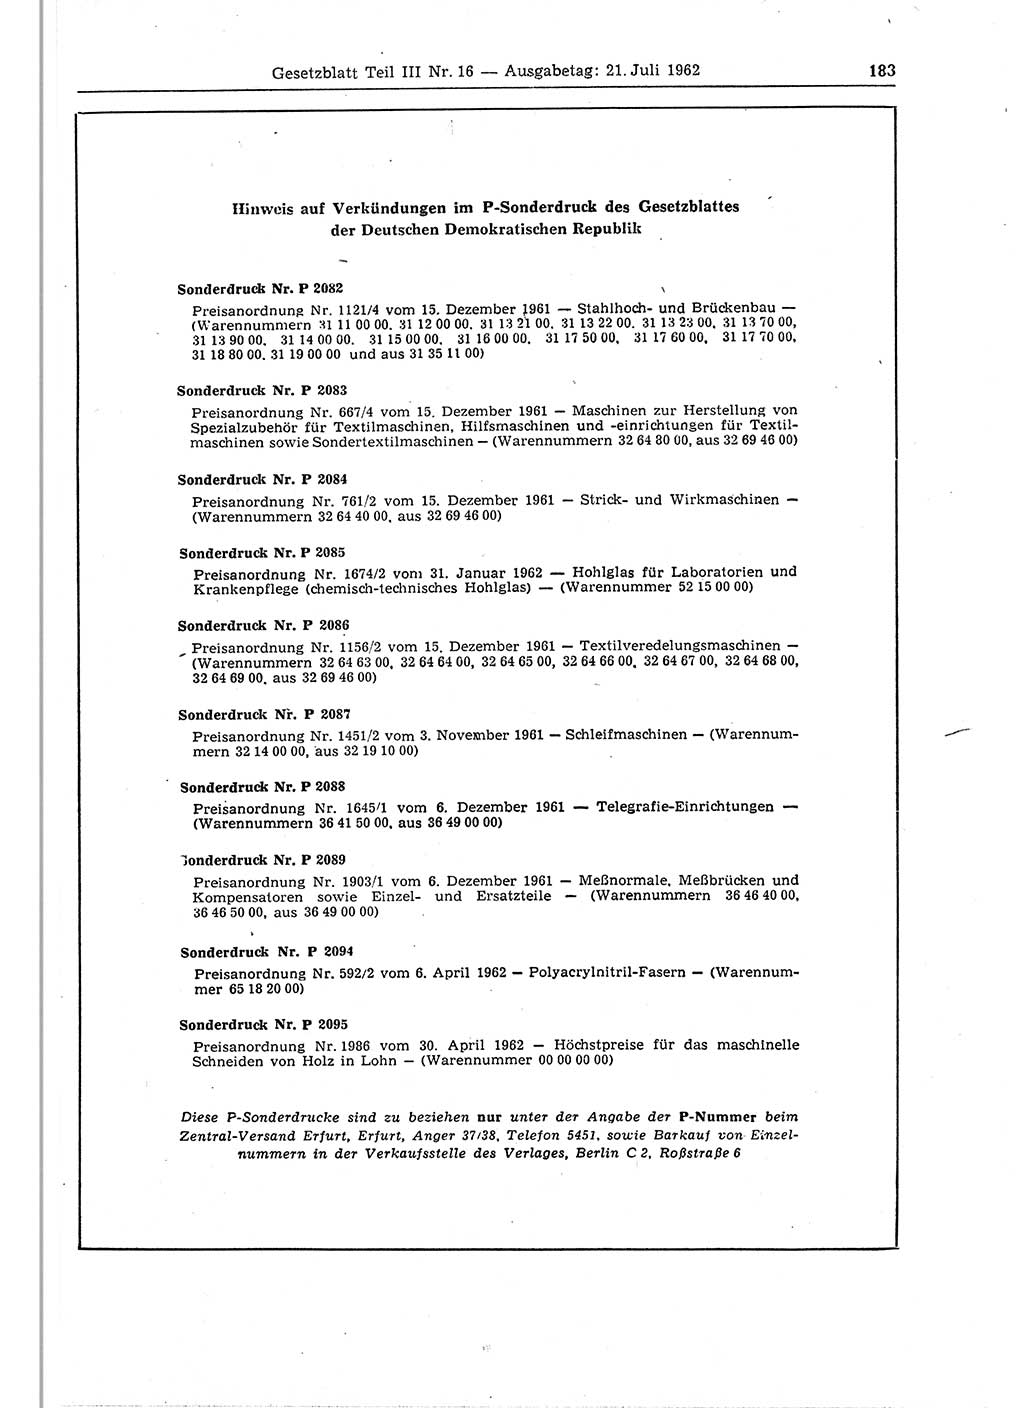 Gesetzblatt (GBl.) der Deutschen Demokratischen Republik (DDR) Teil ⅠⅠⅠ 1962, Seite 183 (GBl. DDR ⅠⅠⅠ 1962, S. 183)